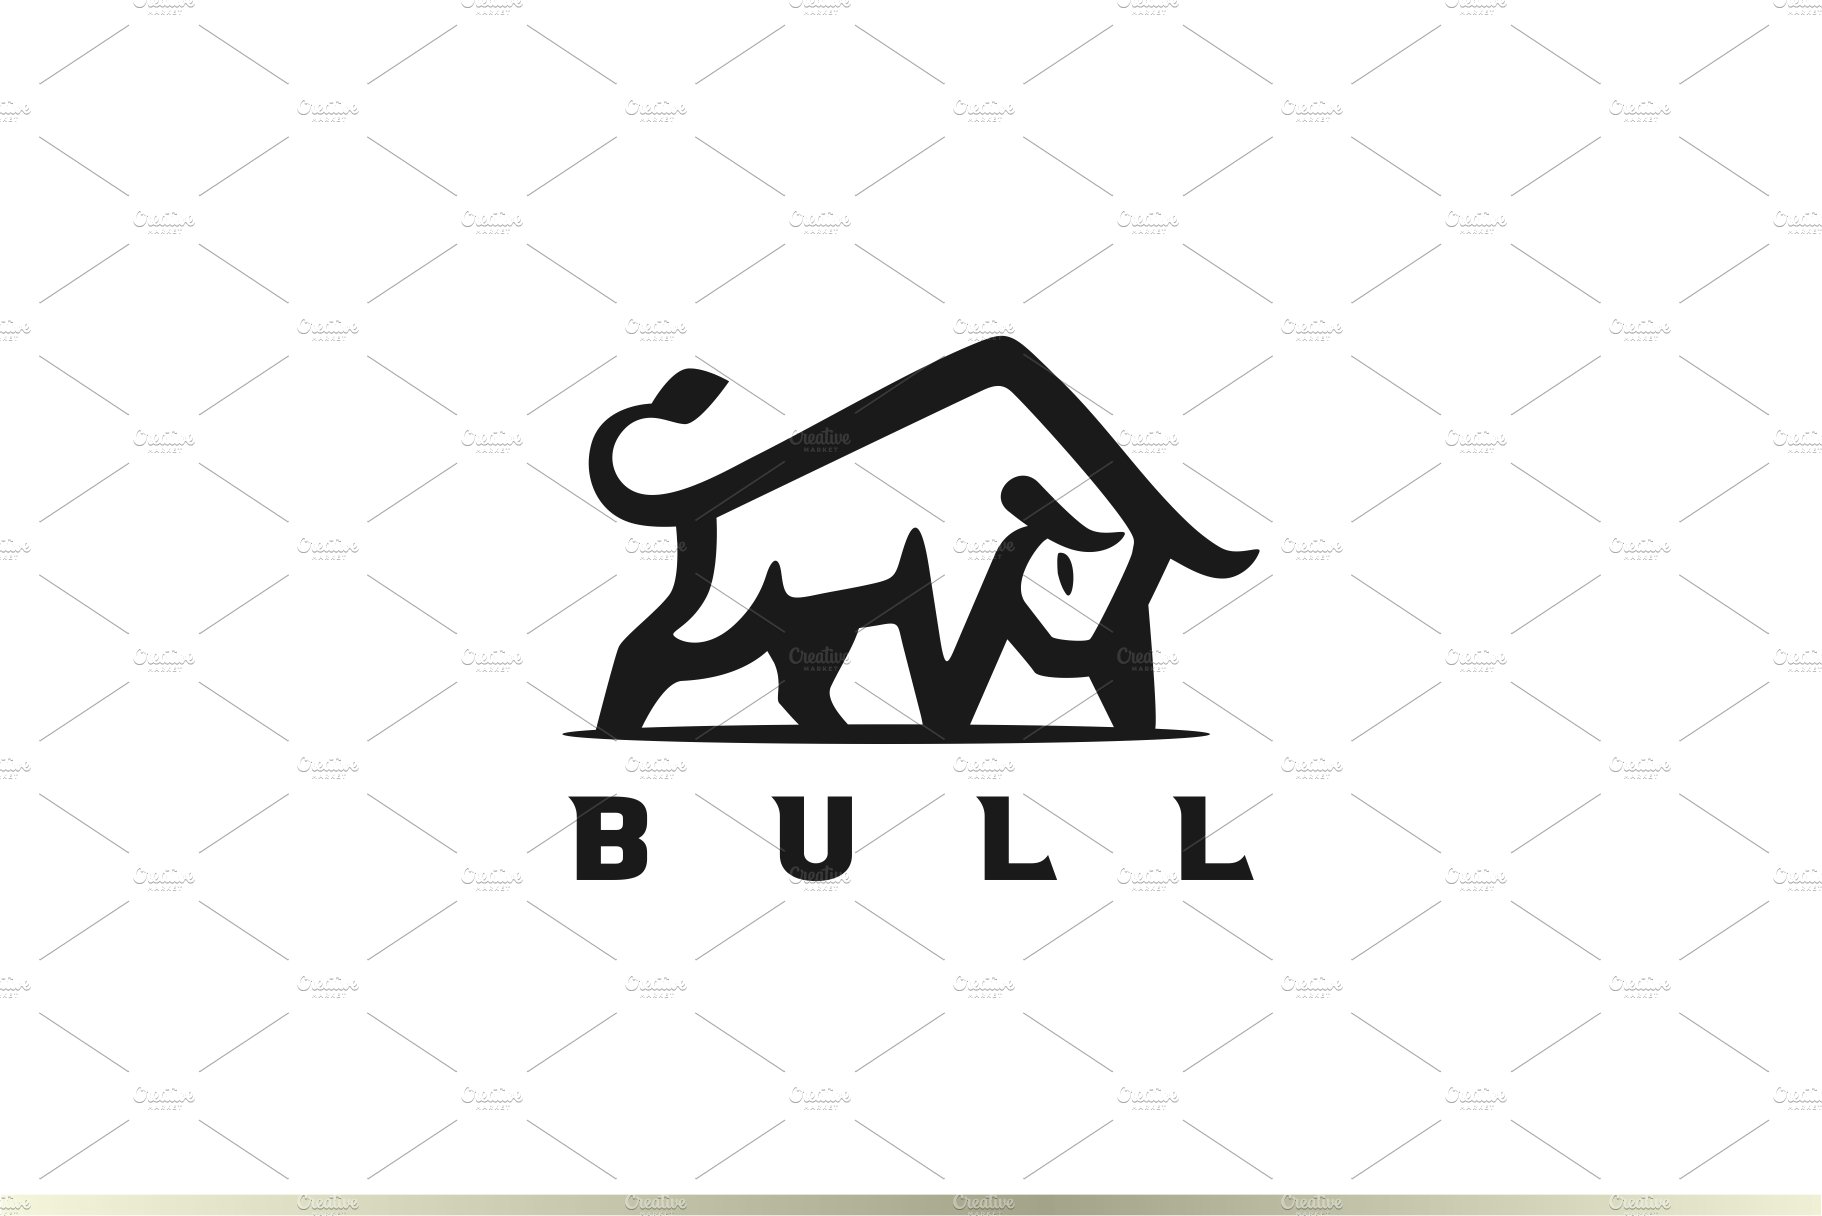 Bull Logo Design cover image.